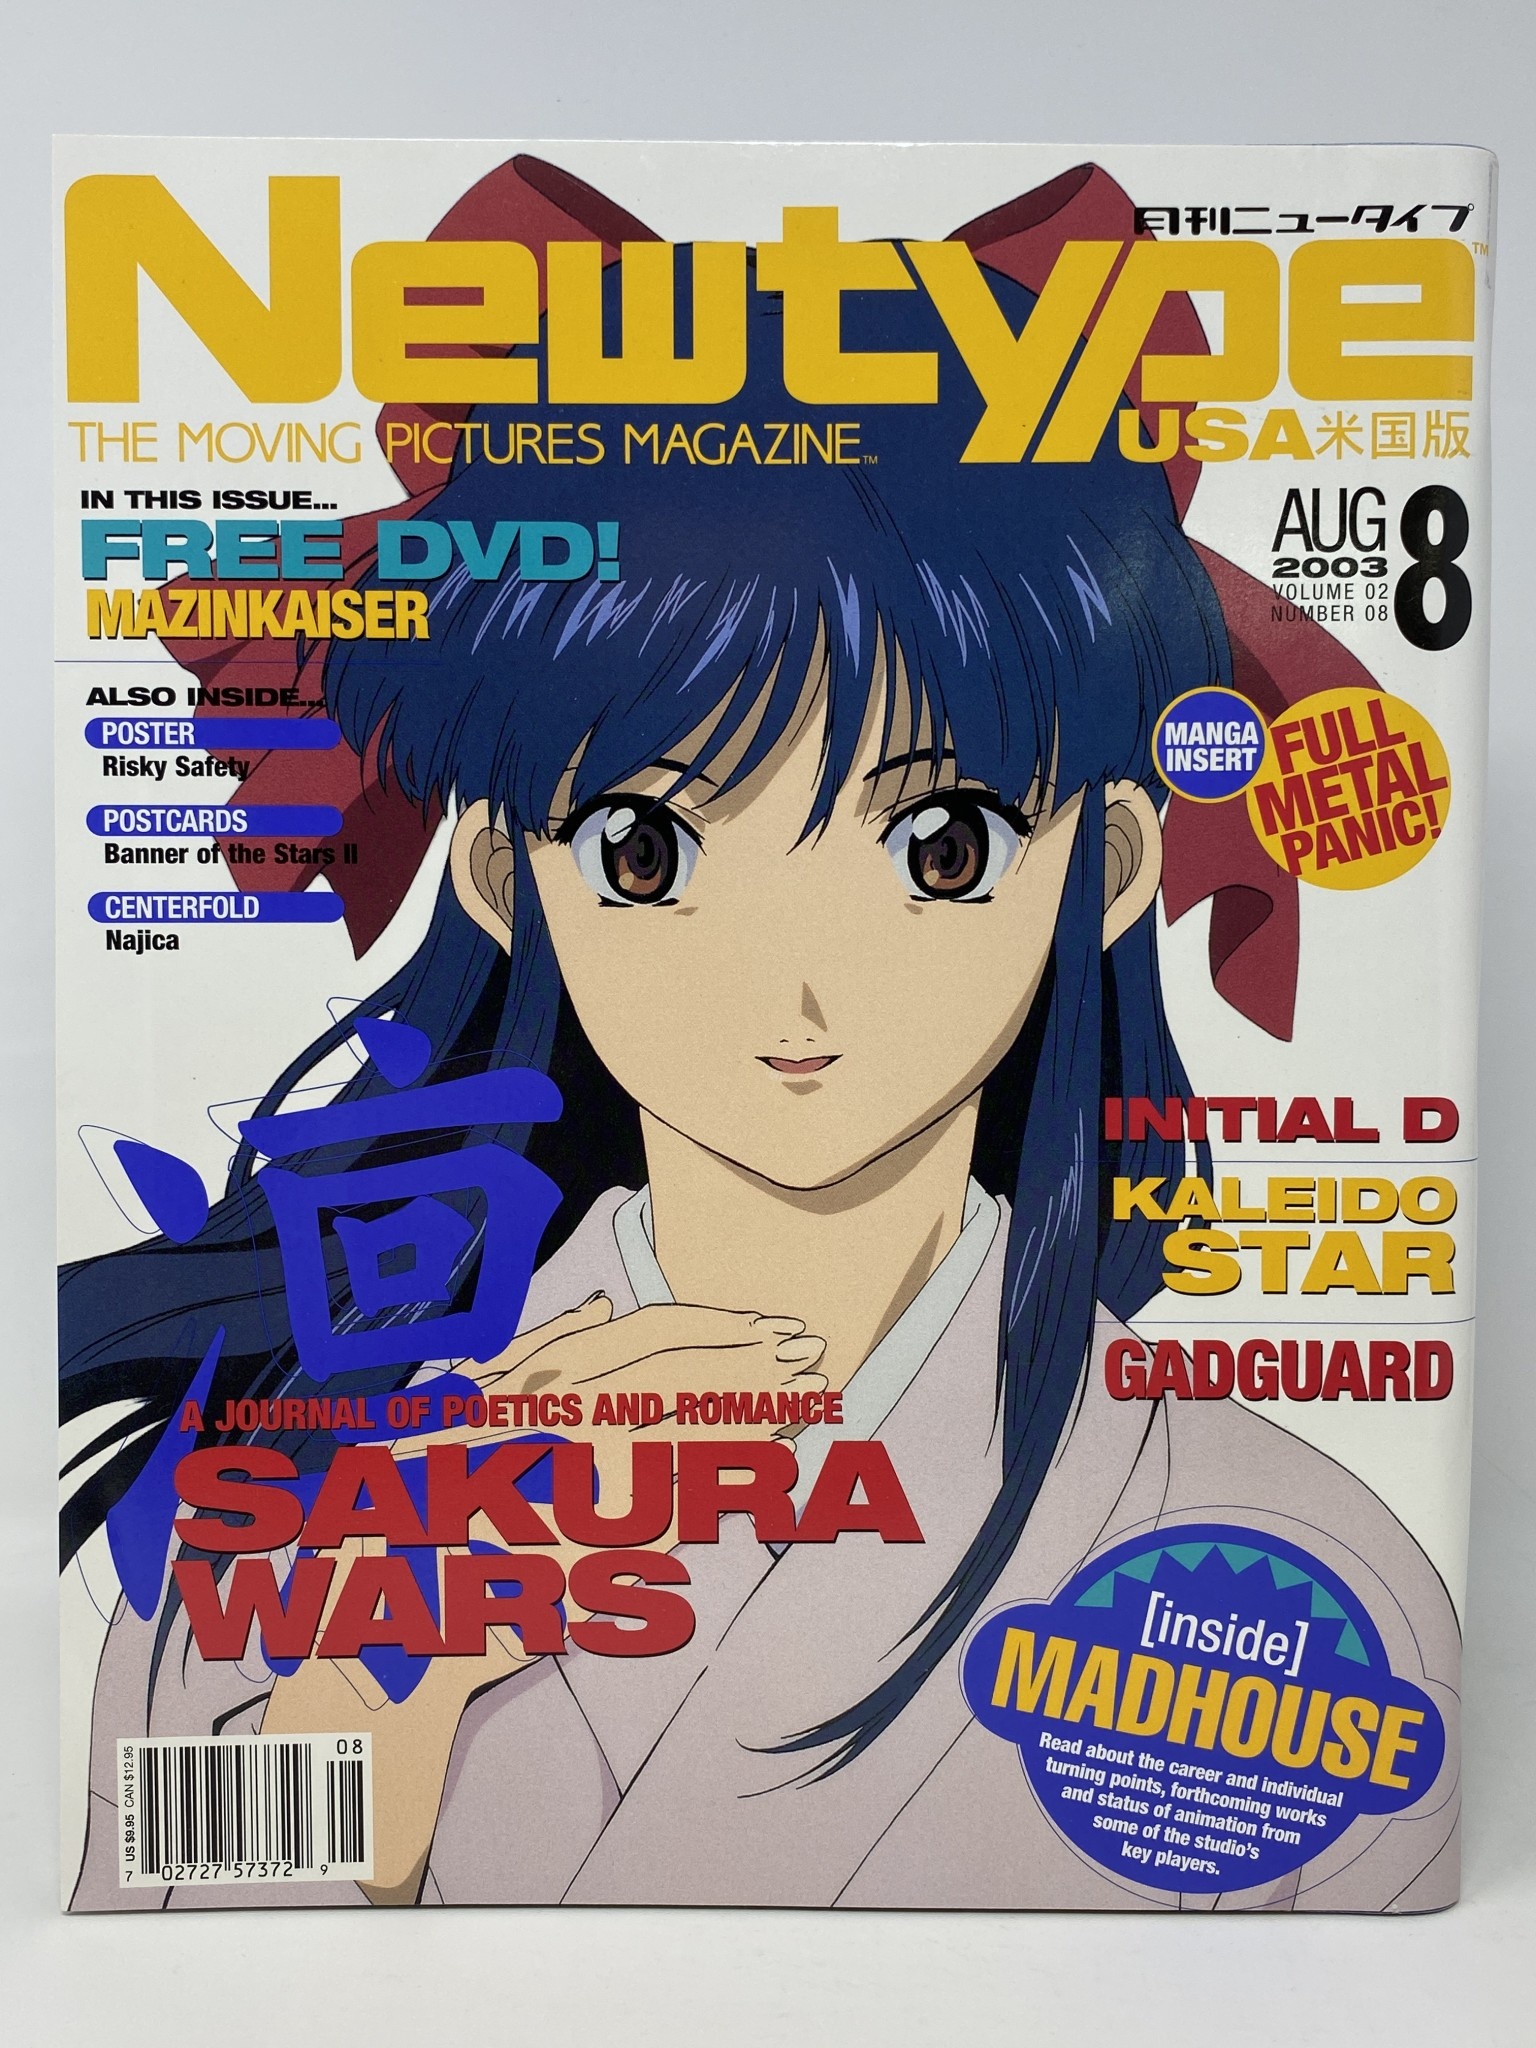 Do Japanese manga magazines have ISSNs? - Anime & Manga Stack Exchange